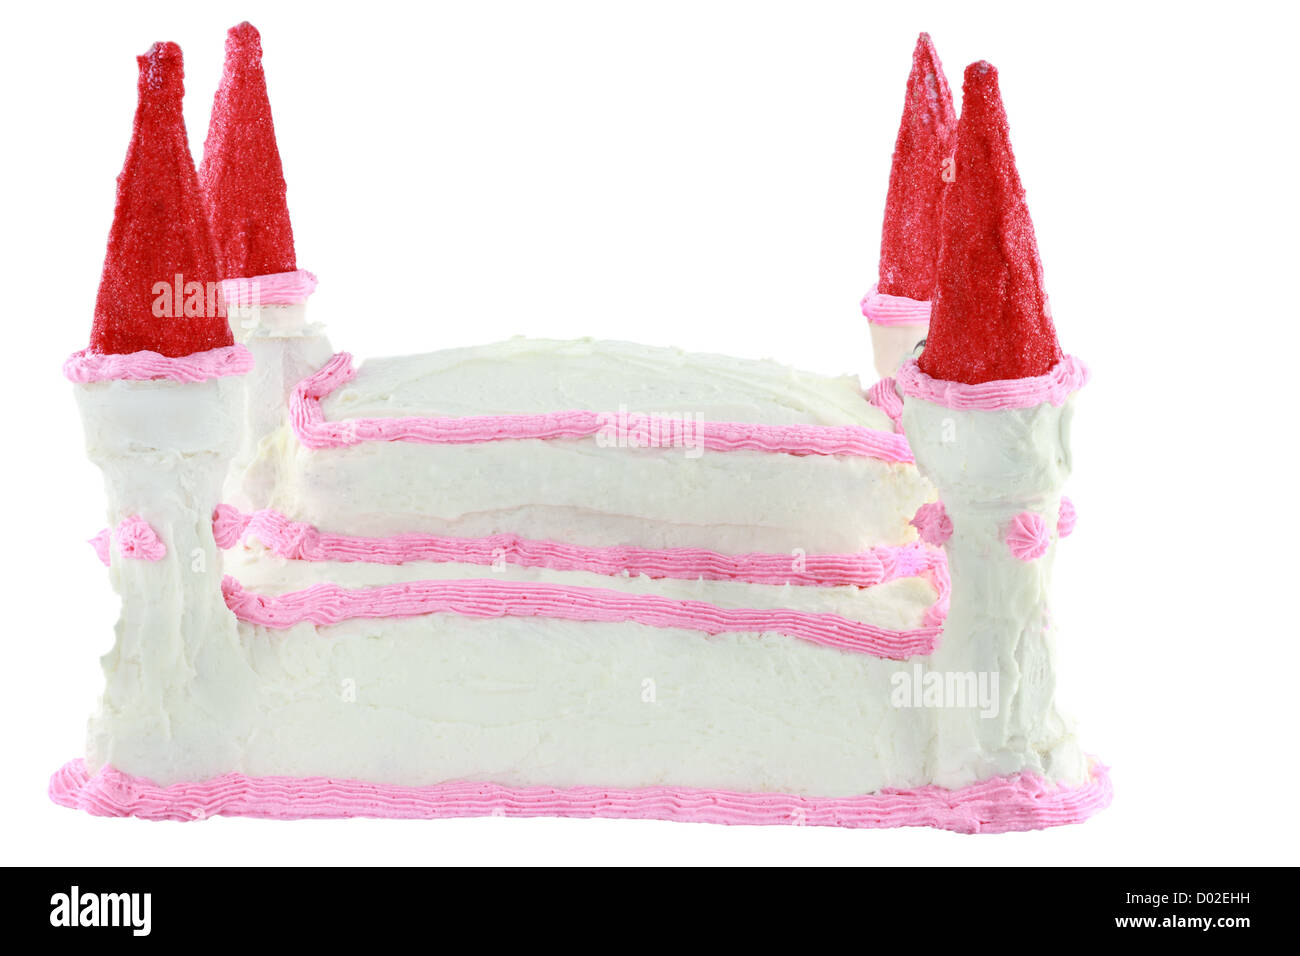 Torta di compleanno a forma di un castello isolato su uno sfondo bianco. Foto Stock